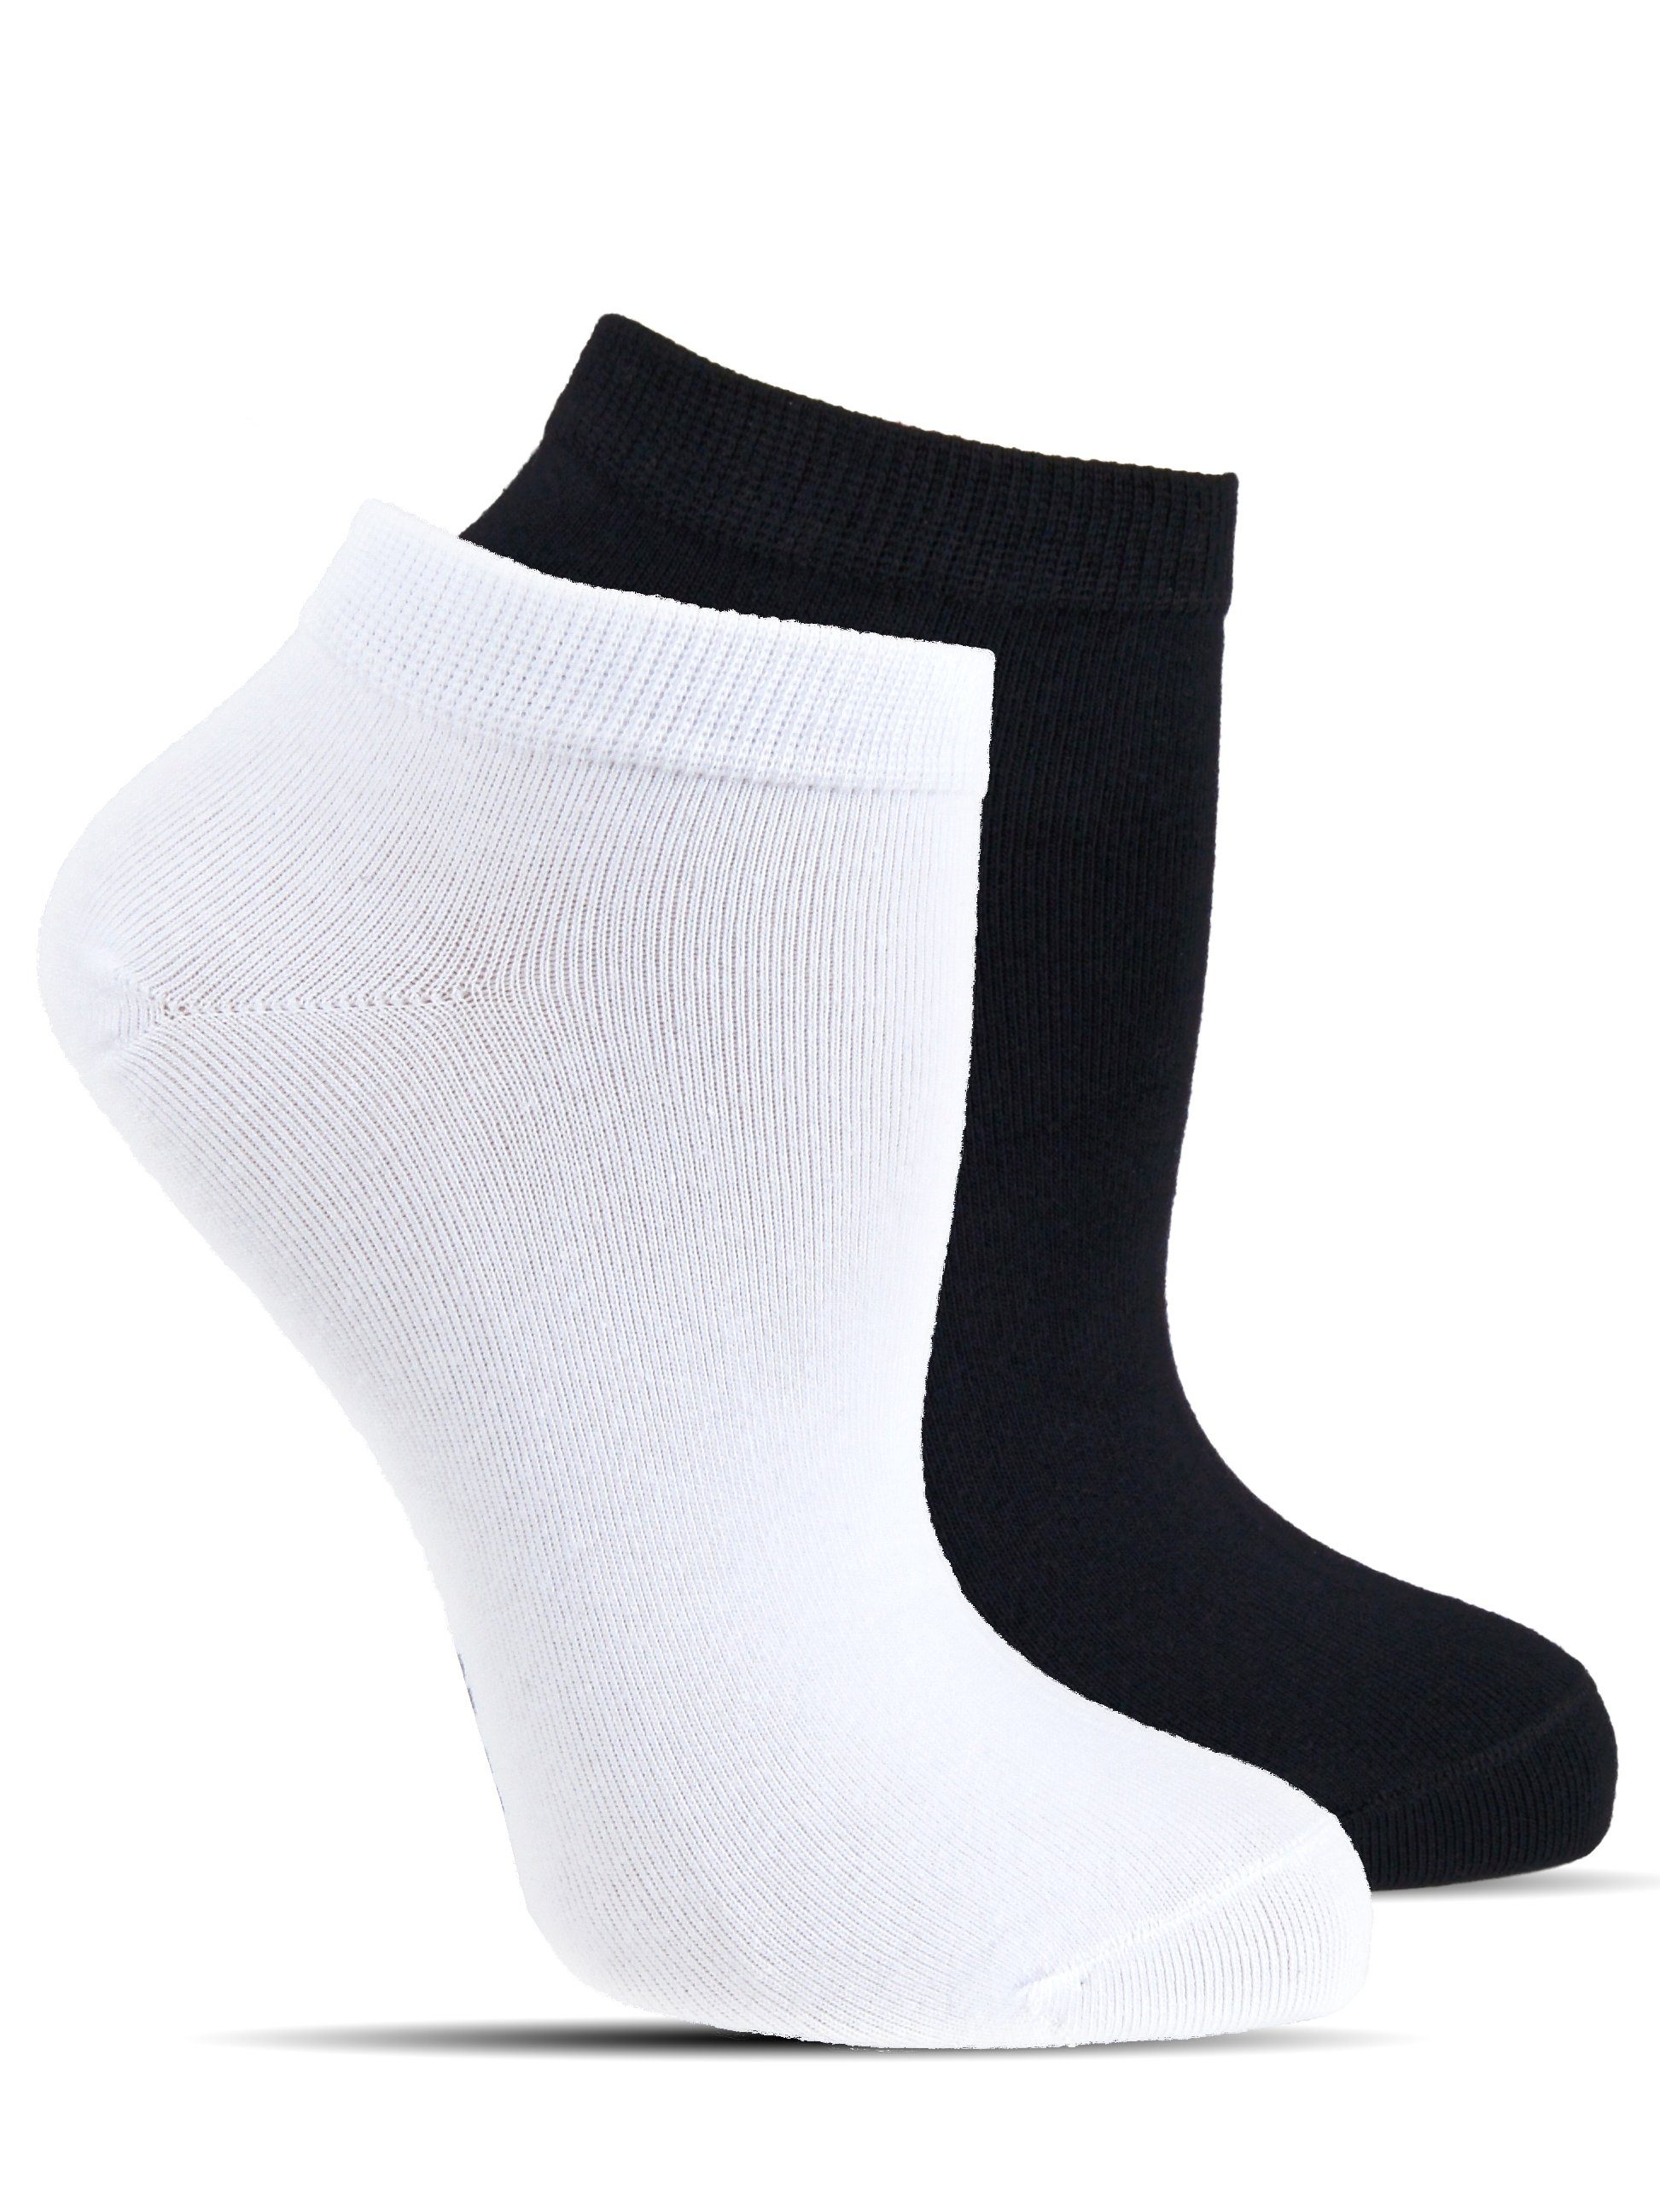 12 Paar Damen Quarter Kurzschaft Socken weiß oder schwarz  100% Baumwolle 